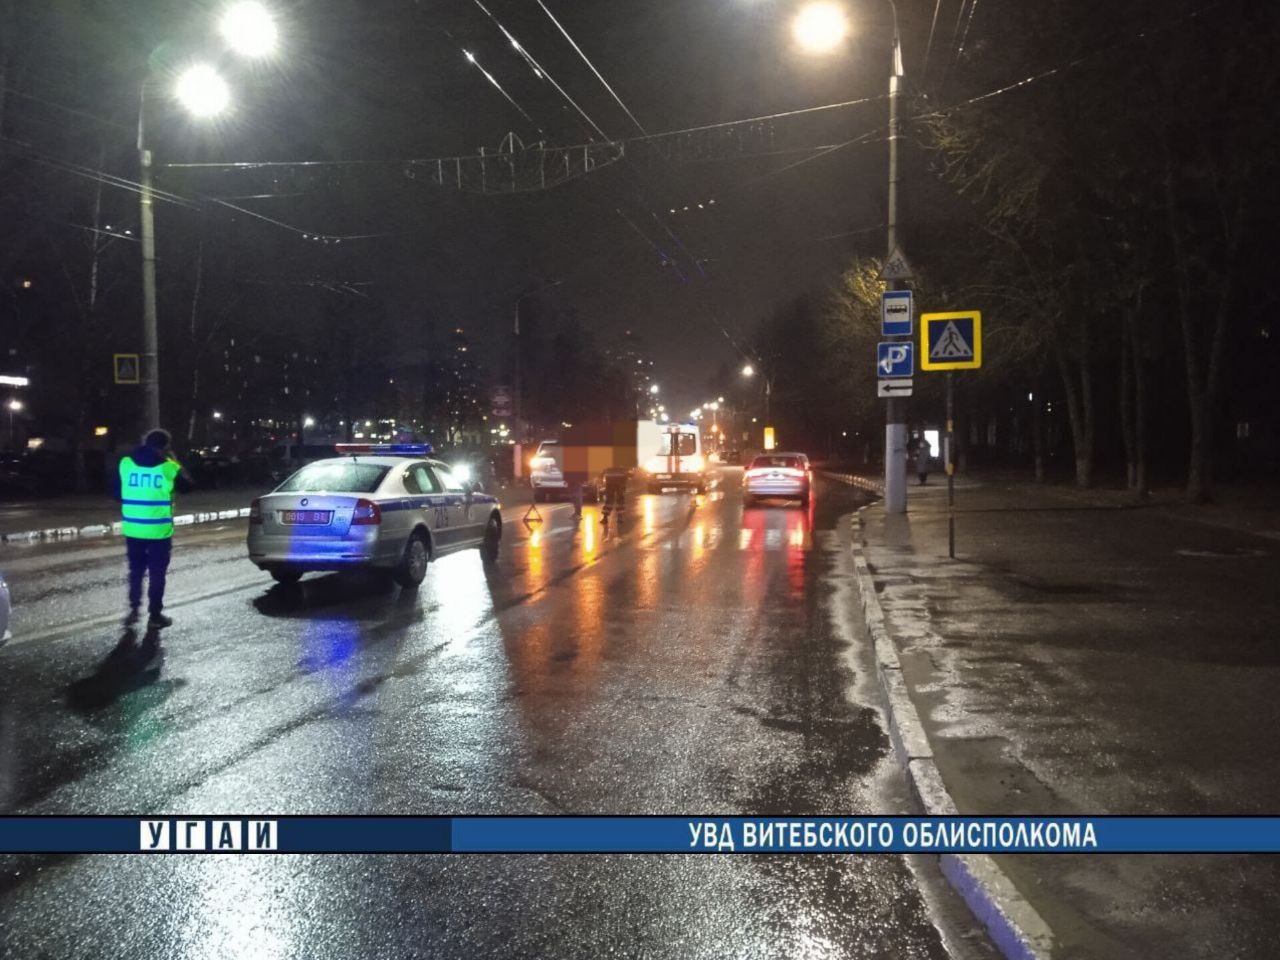 Джип сбил пенсионера на пешеходном переходе на улице Правды в Витебске. Фото ГАИ